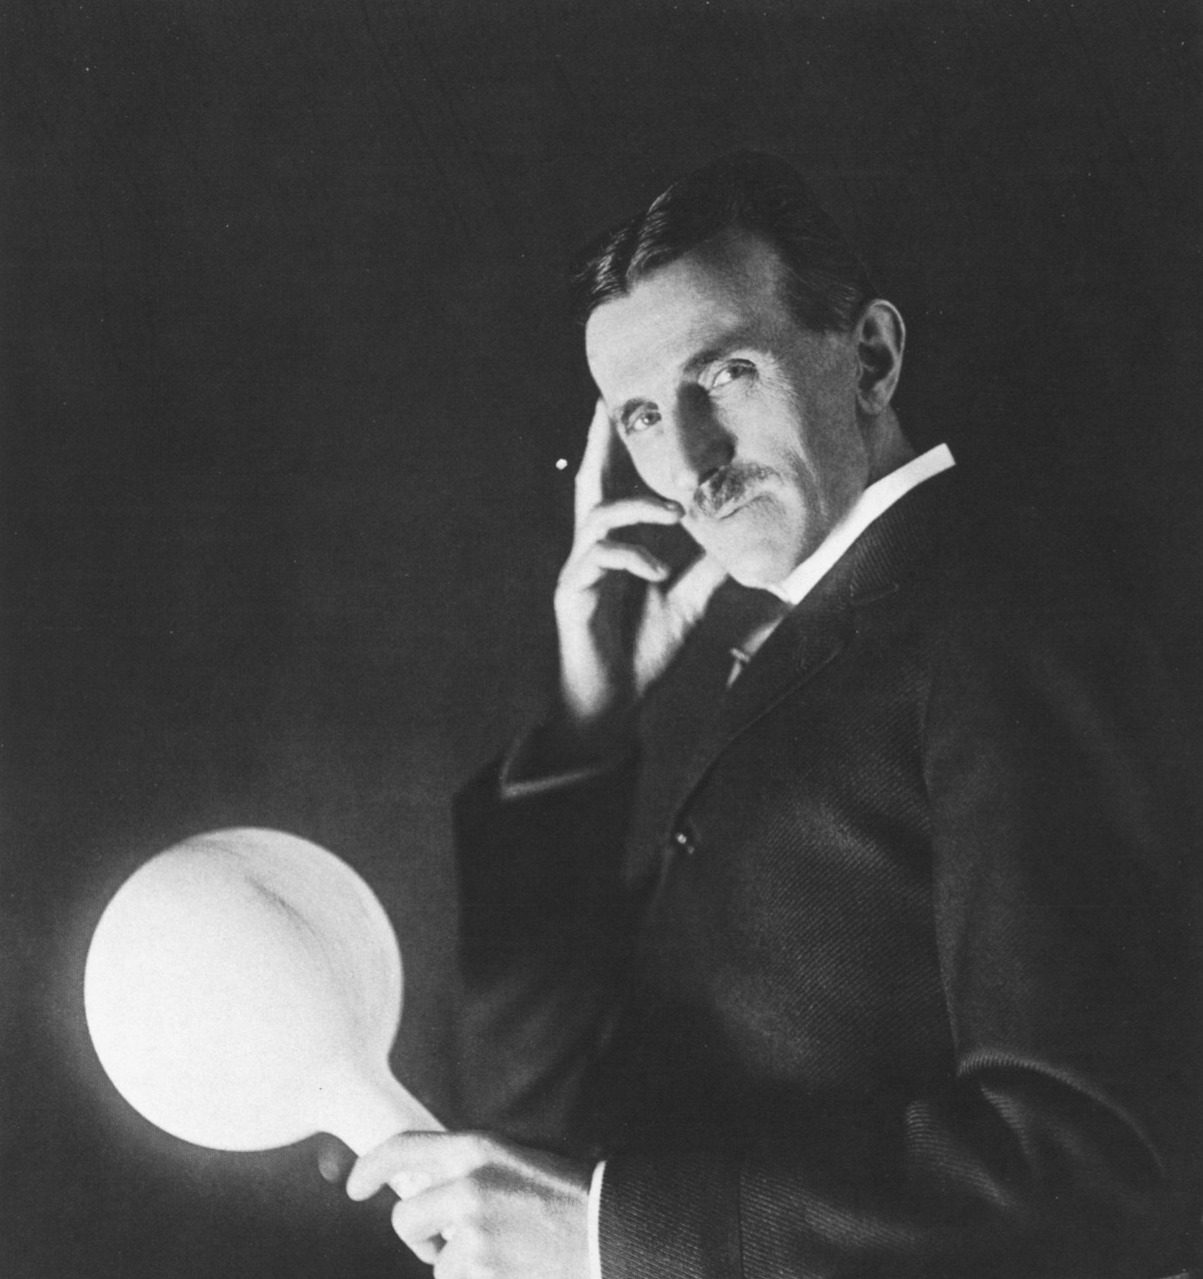 Portrait en noir et blanc de l'inventeur américain Nikola Tesla tenant une lampe allumée dans sa main.